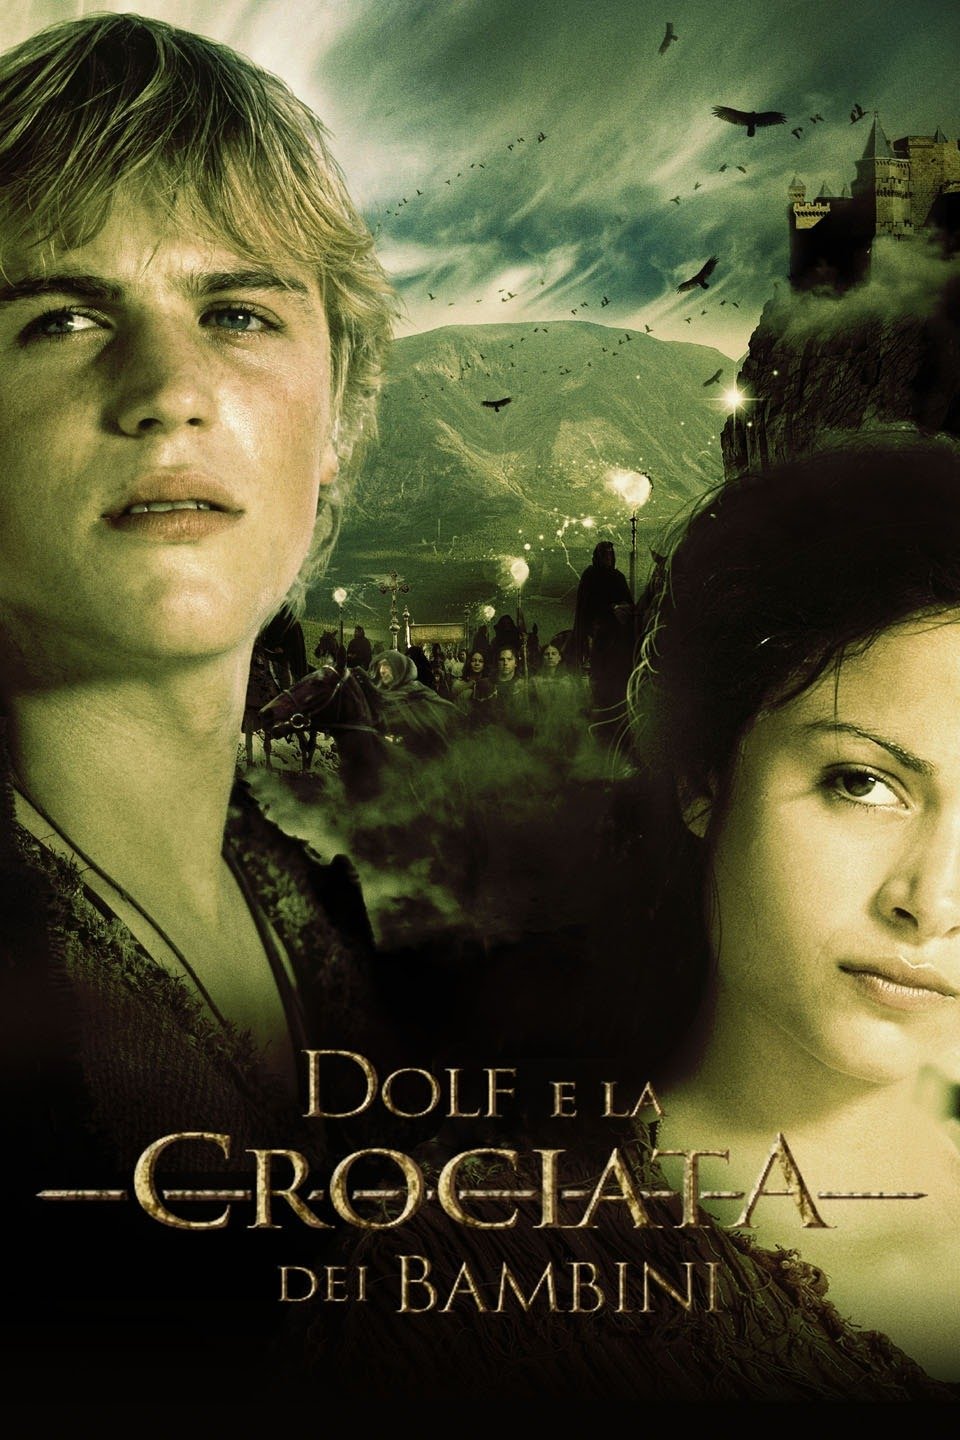 Dolf e la crociata dei bambini (2006)